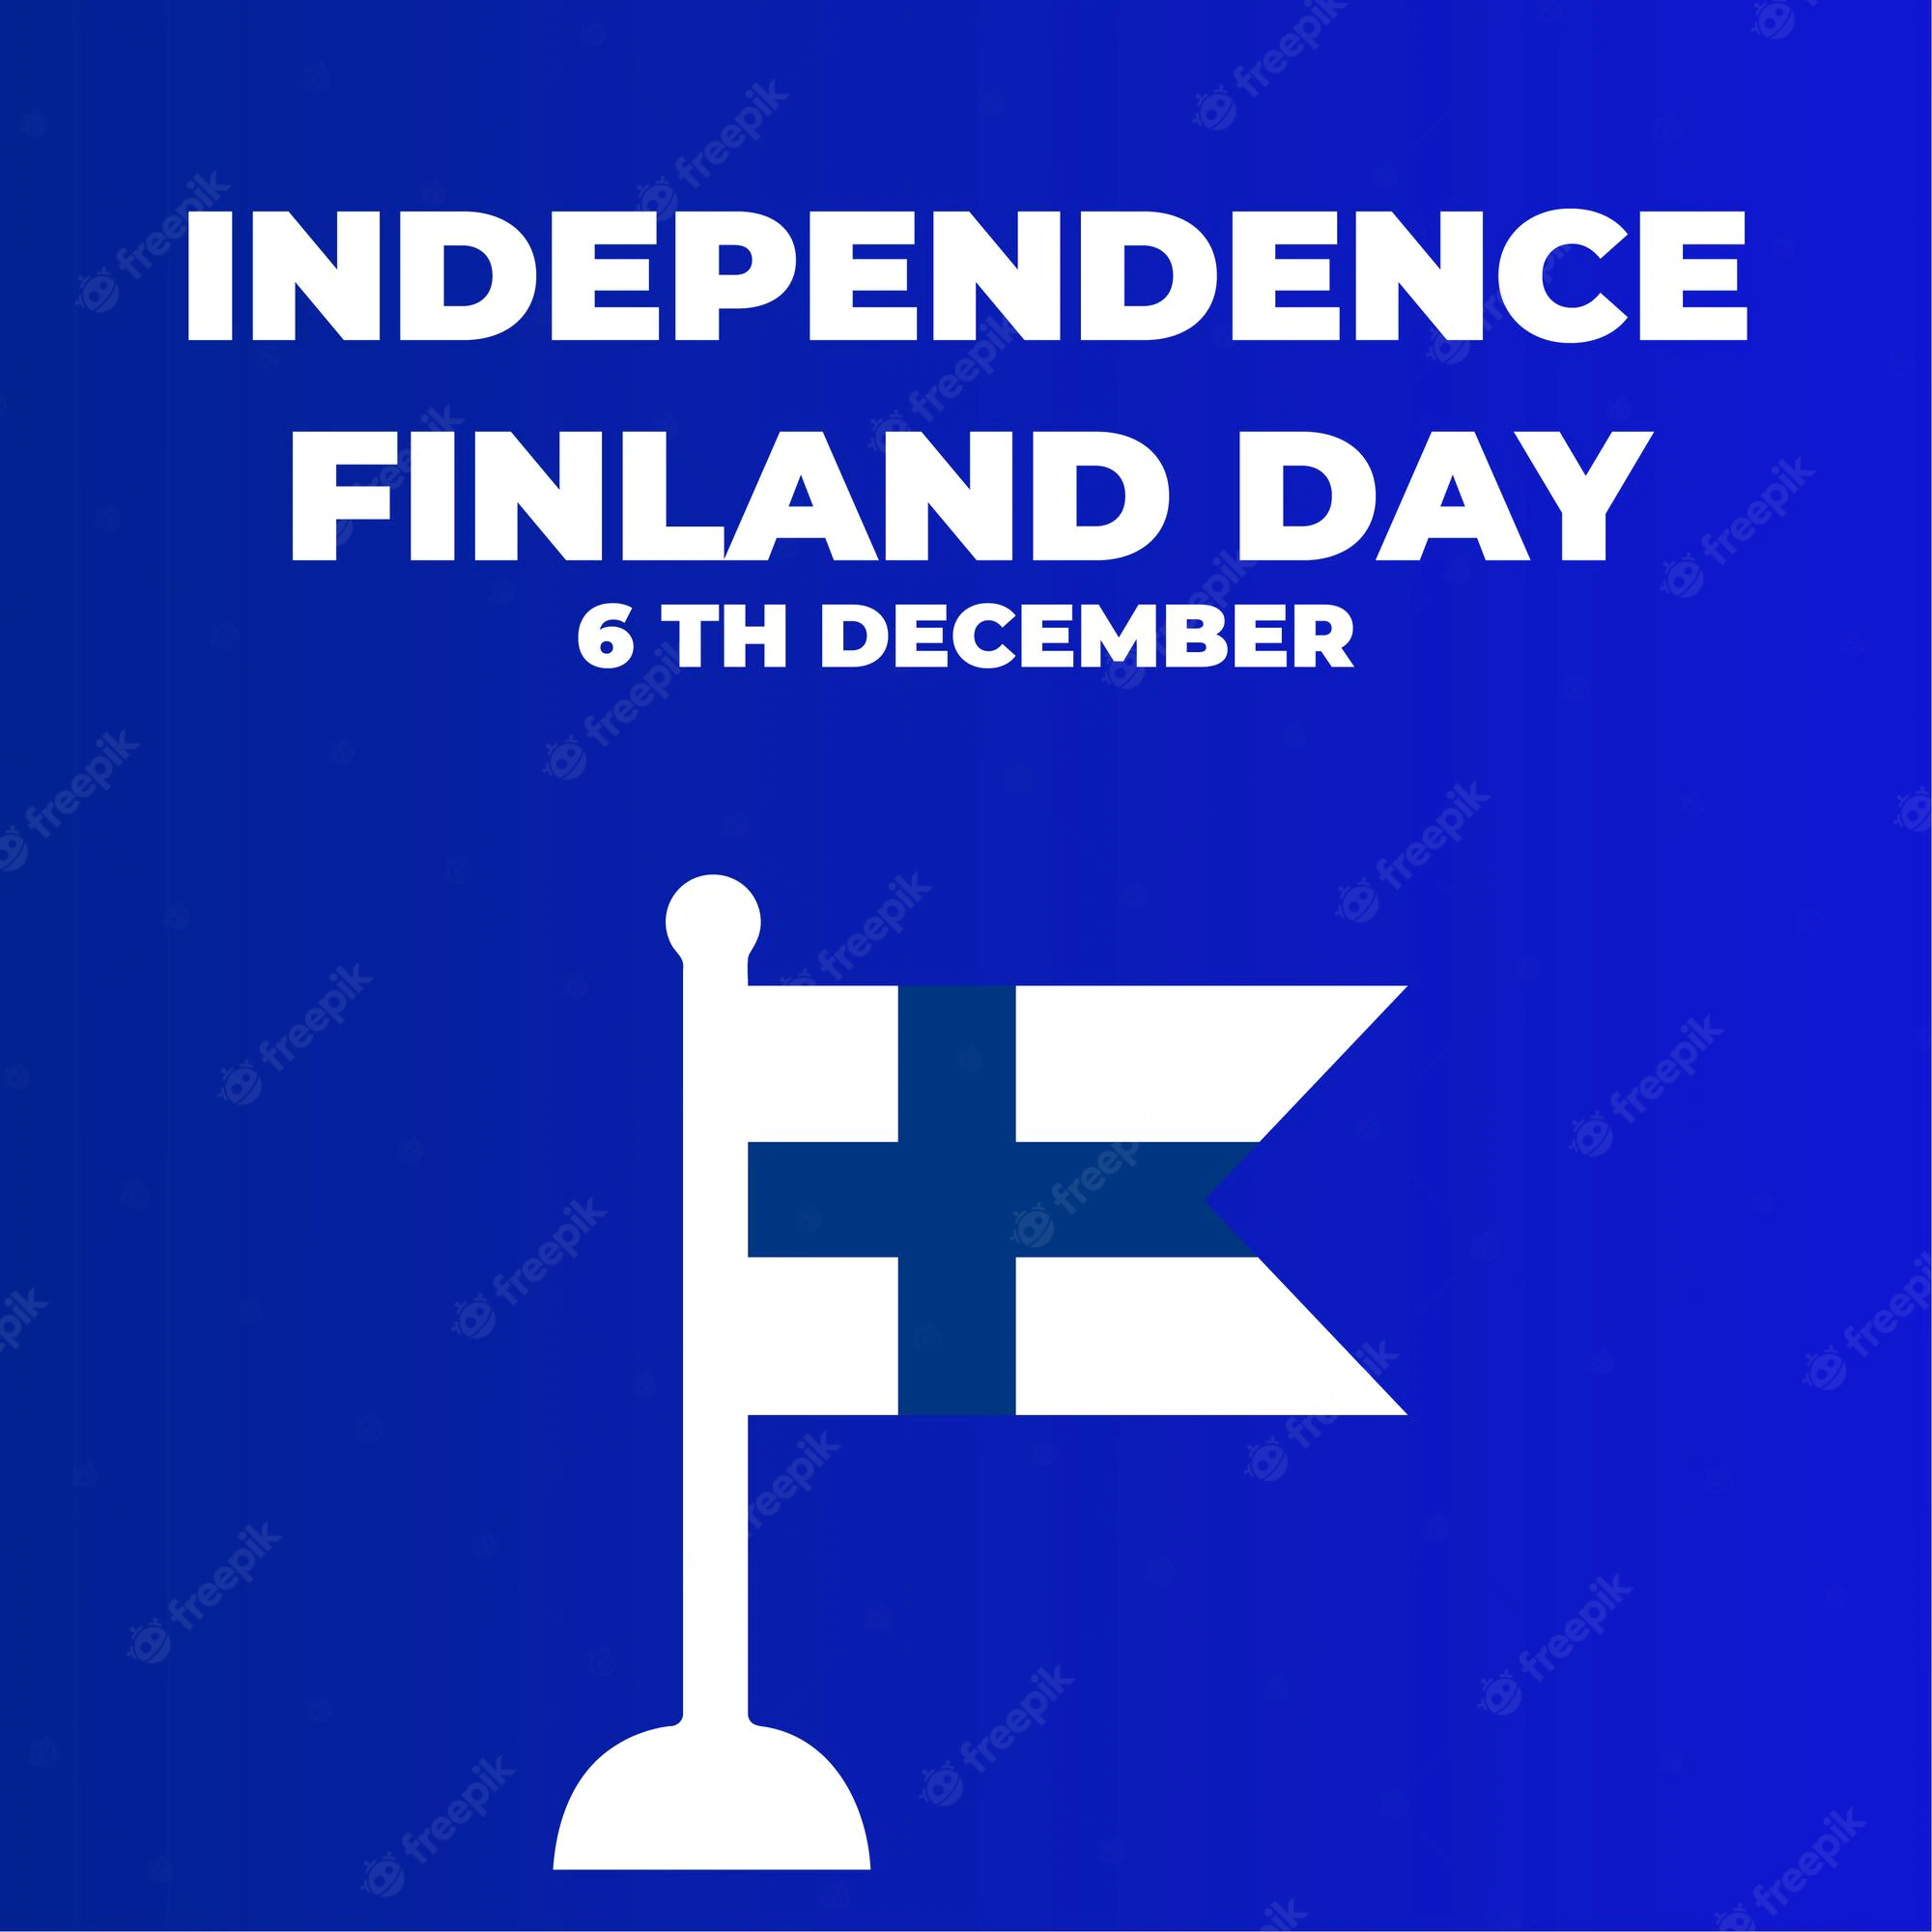 عيد استقلال فنلندا 2022: التمنيات والرسائل والتحيات والاقتباسات والصور عالية الدقة والأقوال والقصاصات الفنية والتعليقات التوضيحية